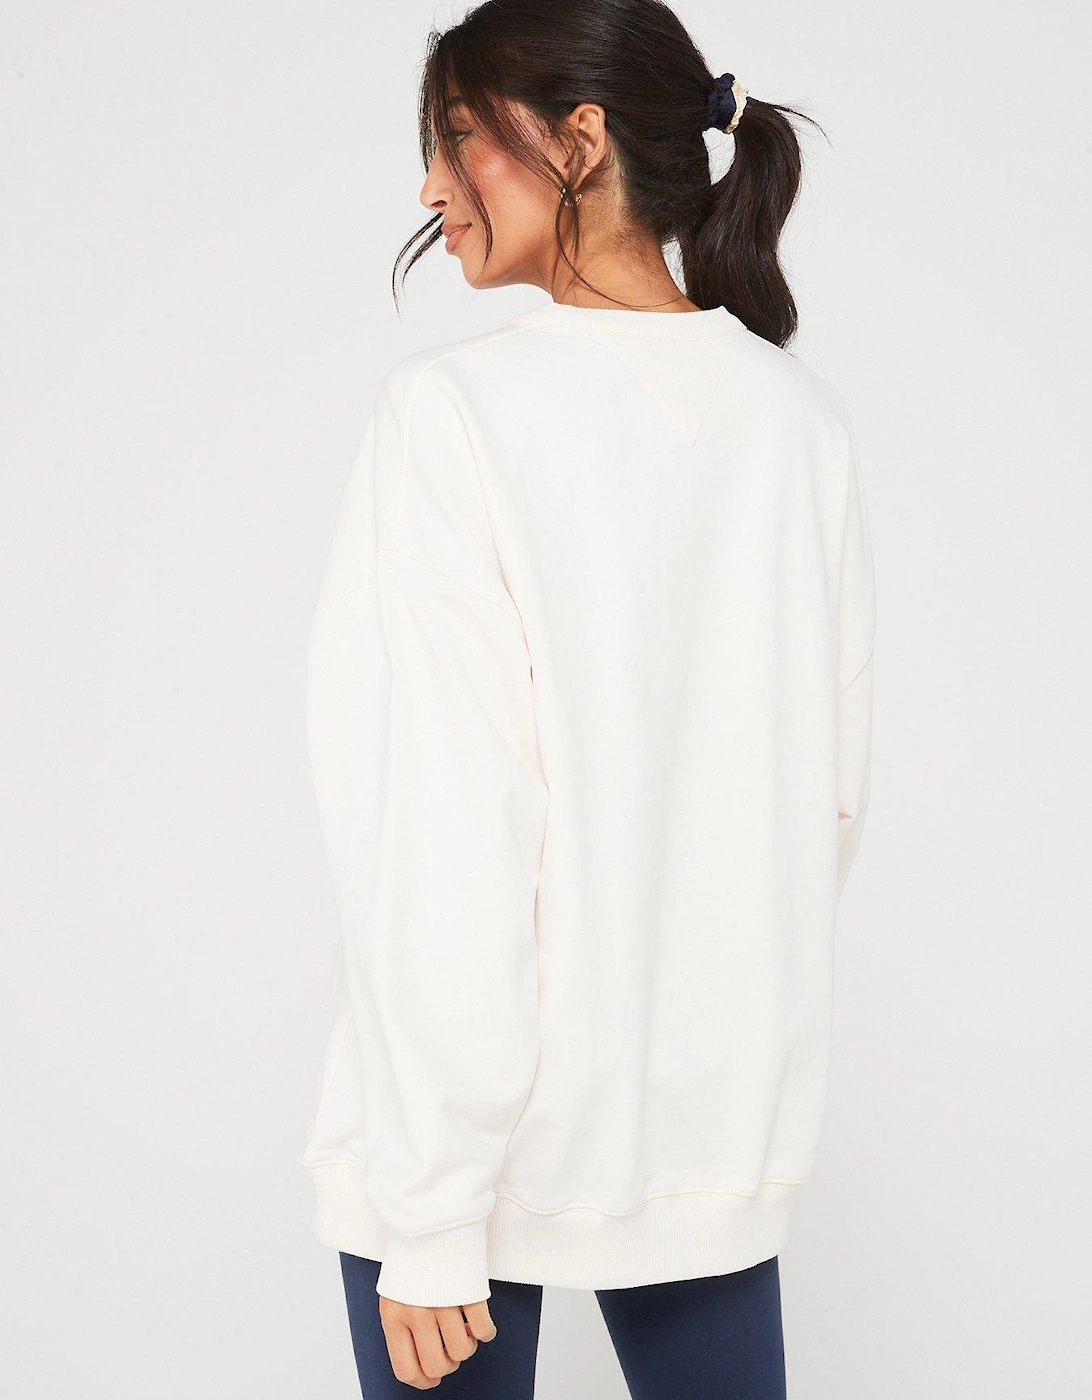 Retro Sweatshirt - White